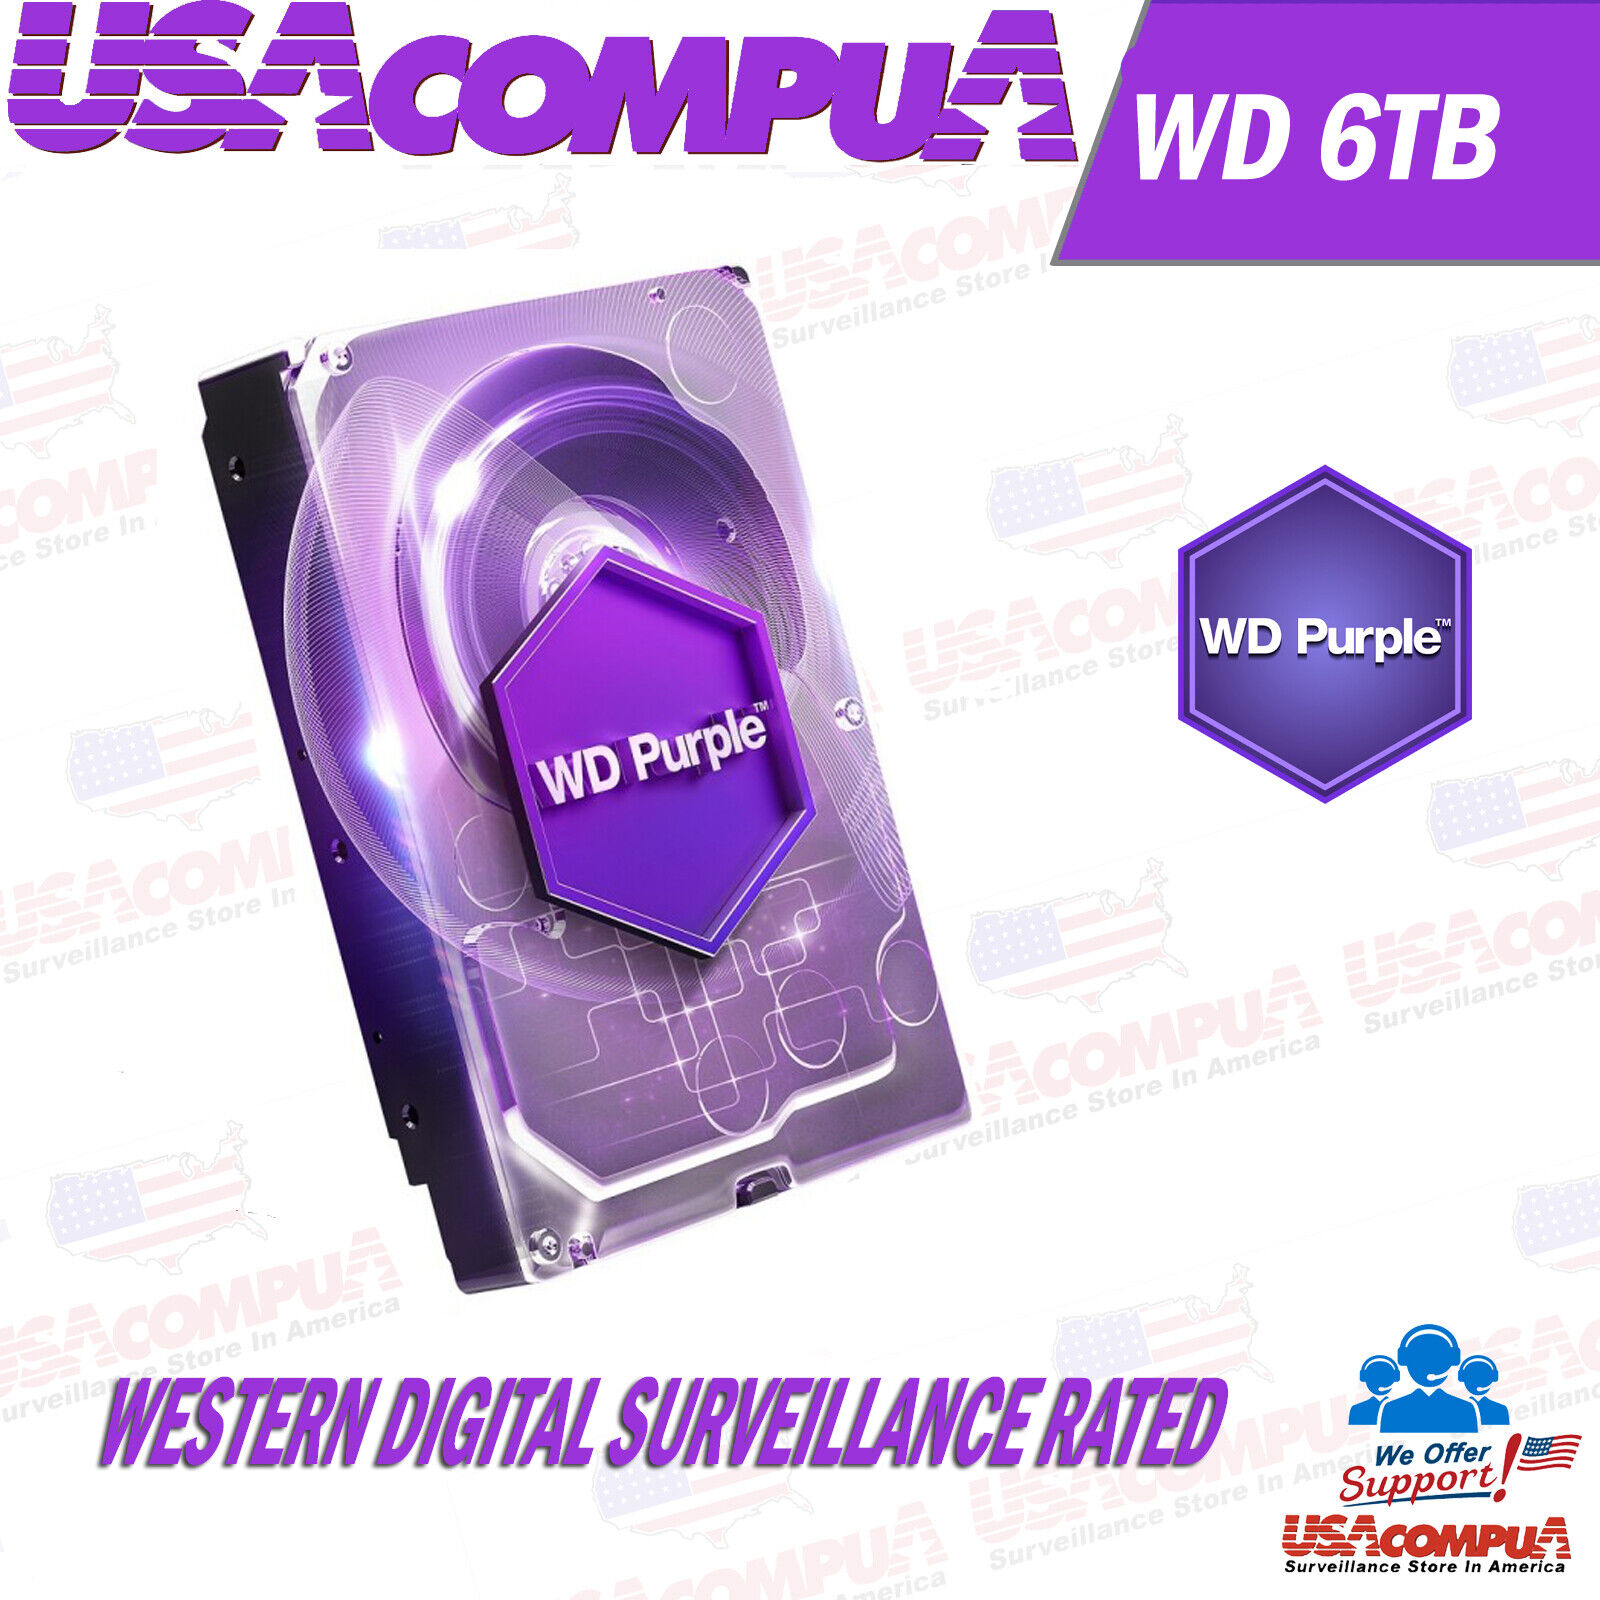 Western Digital Purple 6 TB,Internal,5400 RPM,3.5 inch (WD60PURZ) Hard Drive